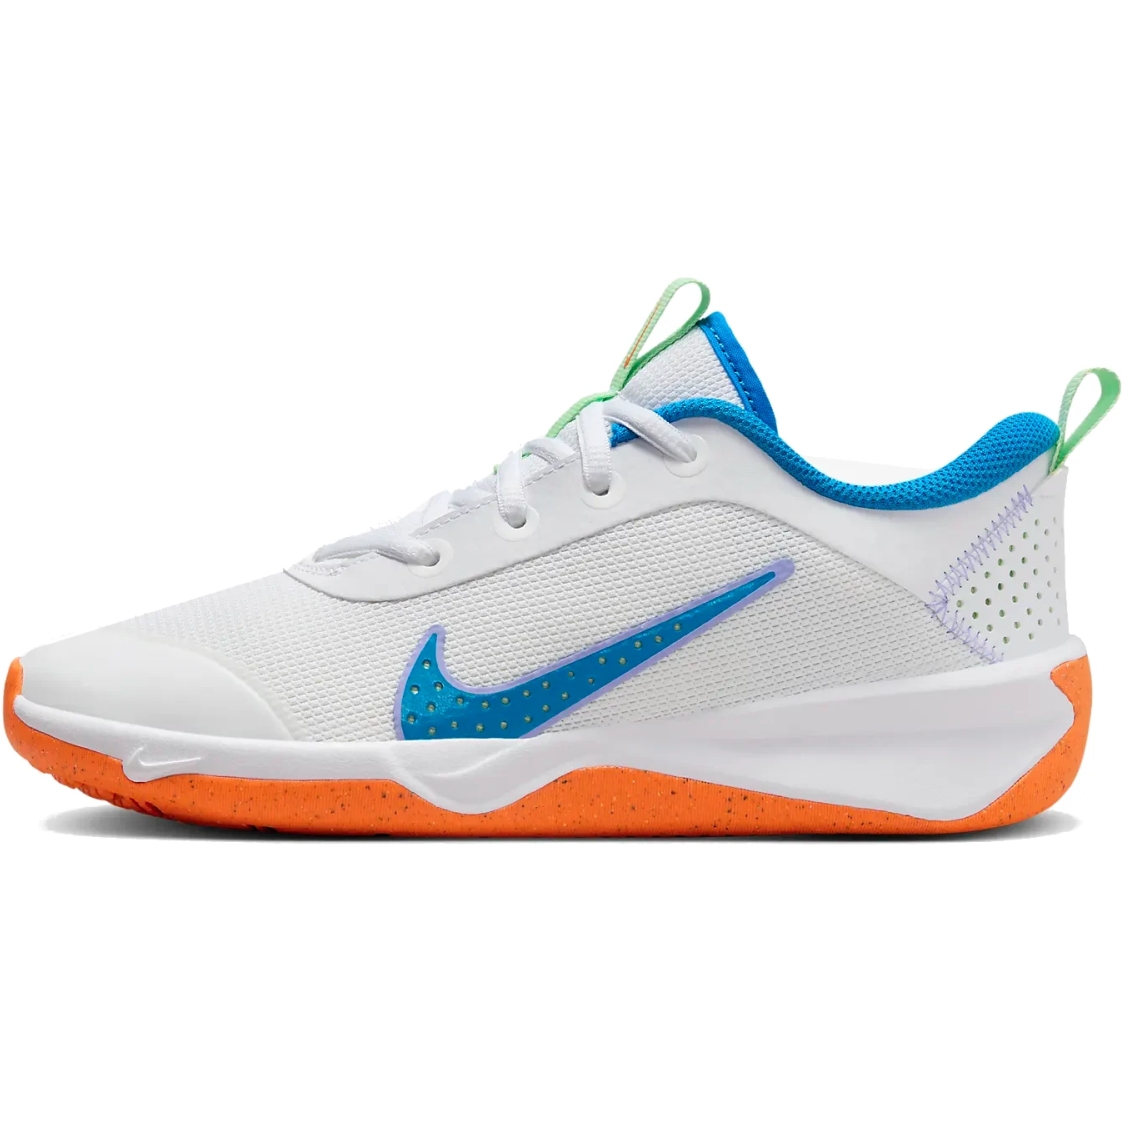 Immagine prodotto da Nike Scarpe Fitness Bambini - Omni Multi-Court - white/photo blue-vapor green DM9027-107